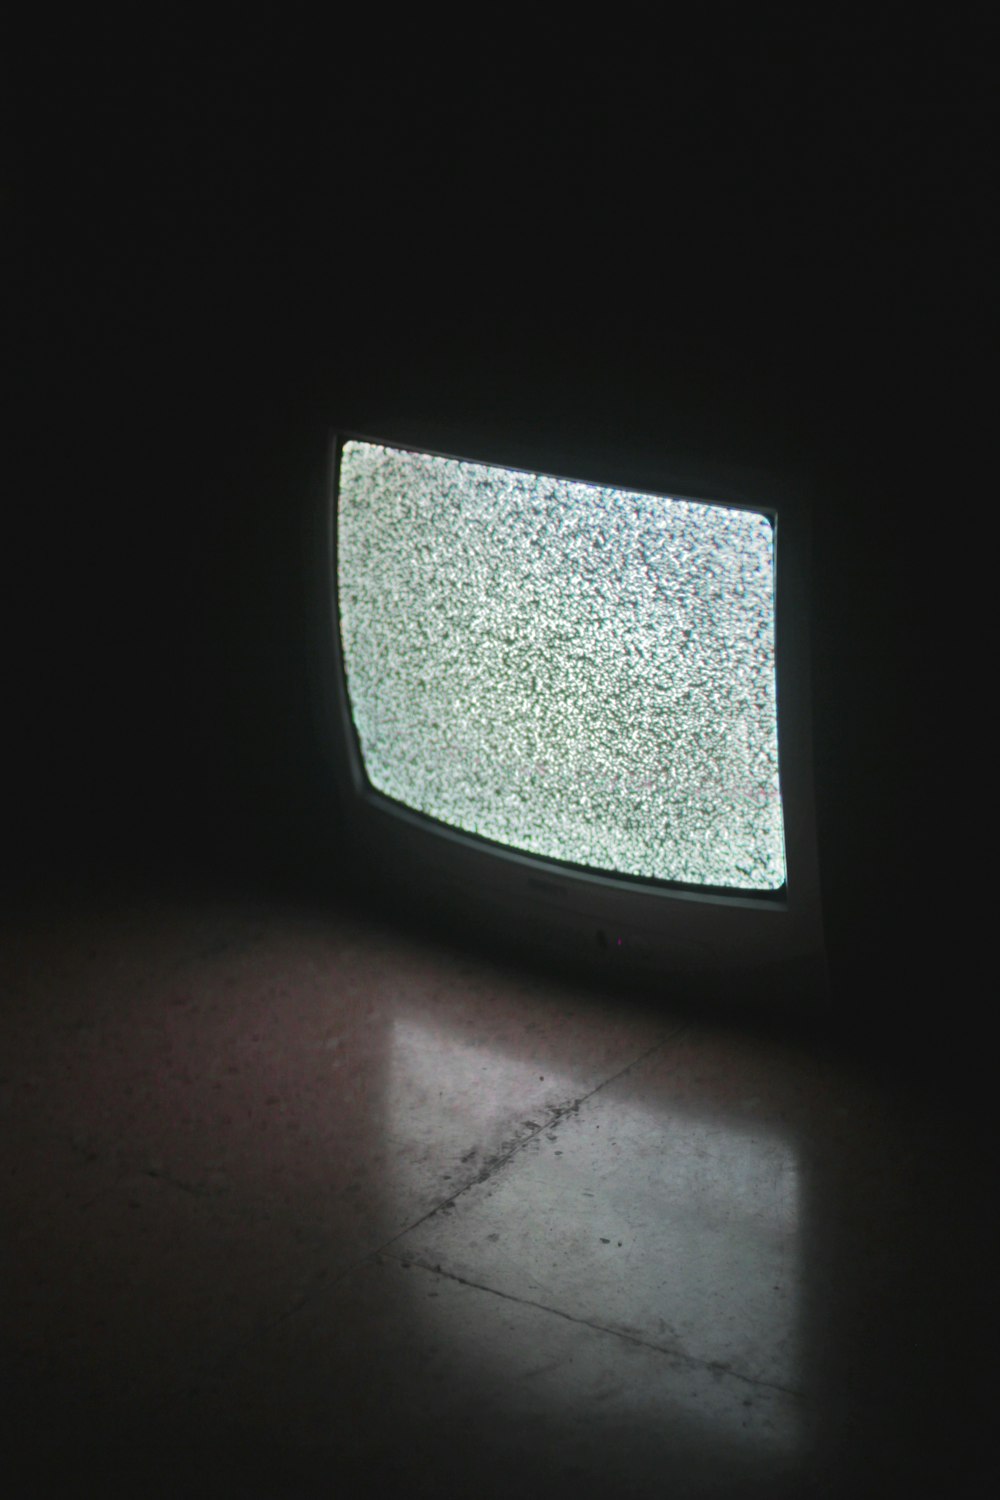 어두운 방에서 켜진 회색 CRT TV